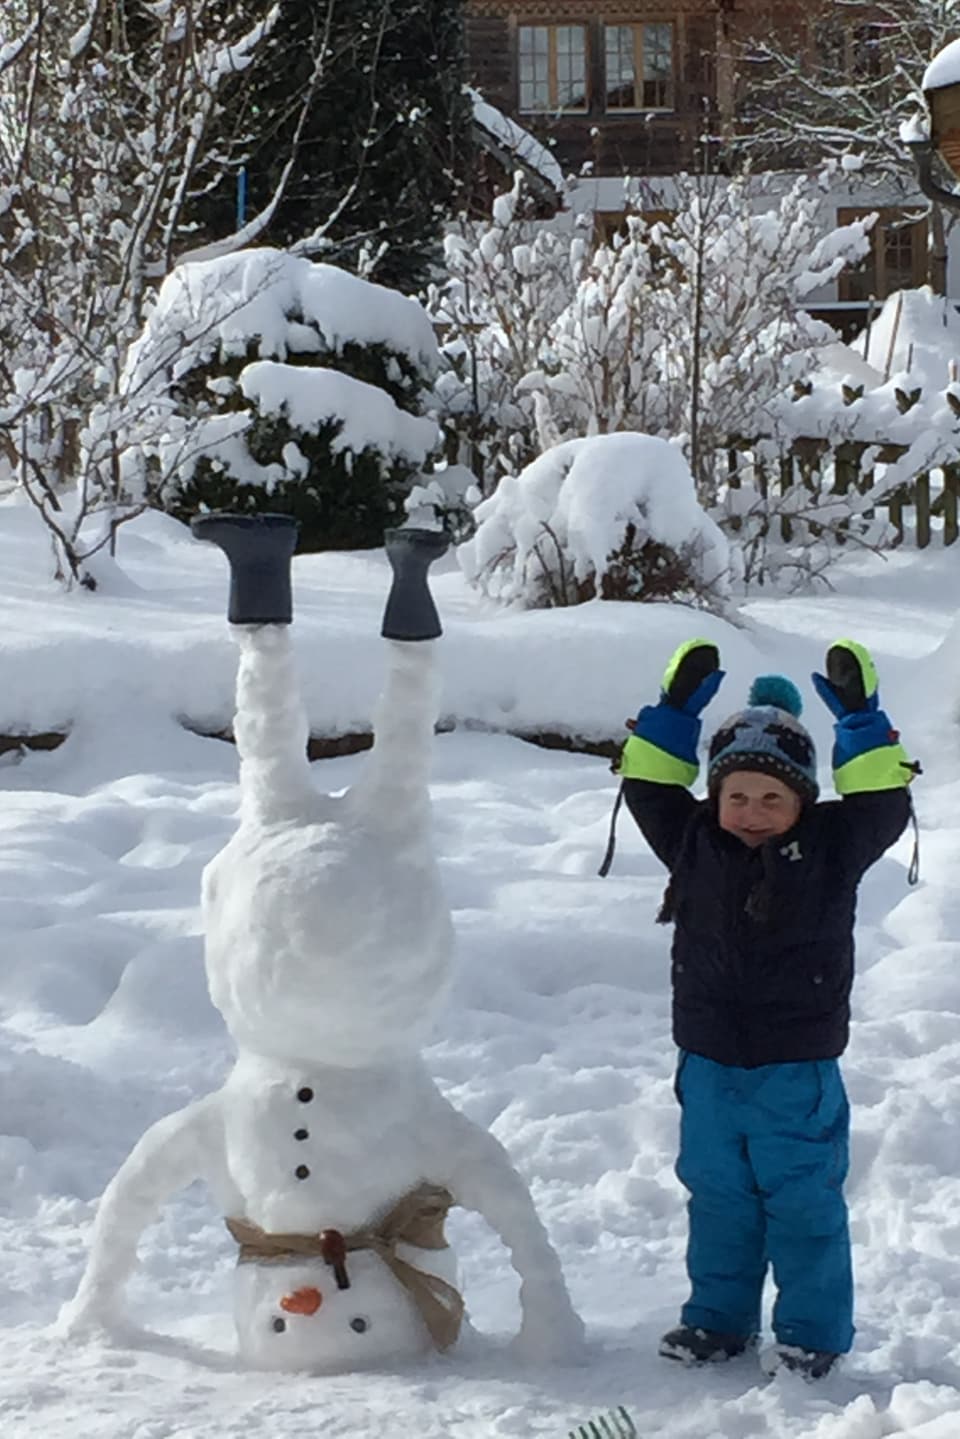 Links im Bild ein Schneemann, der den Kopfstand macht und seine Stiefel in den Himmel streckt. Rechts im Bild ein kleiner Junge, der seine beiden Arme in den Himmel streckt.